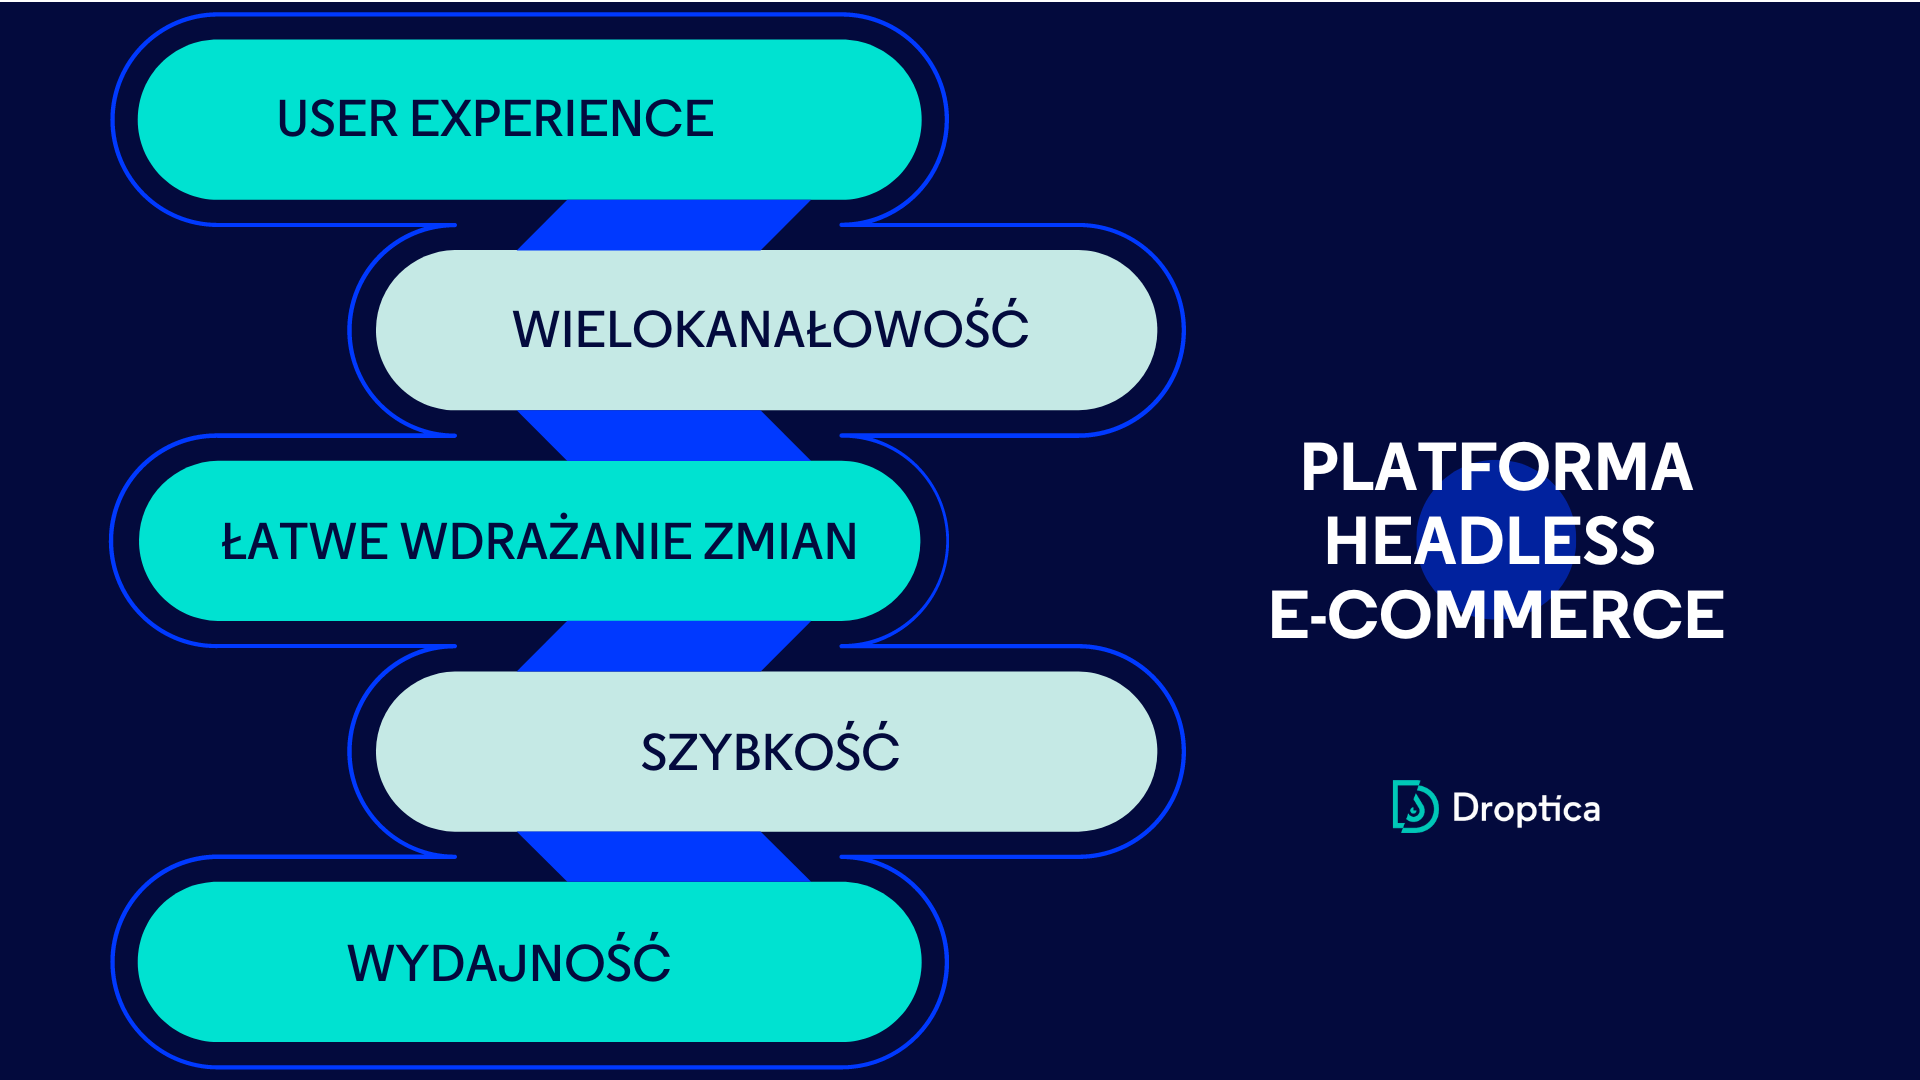 Platforma headless ecommerce jest szybka, wydajna i ułatwia użytkownikom działania w wielu kanałach.